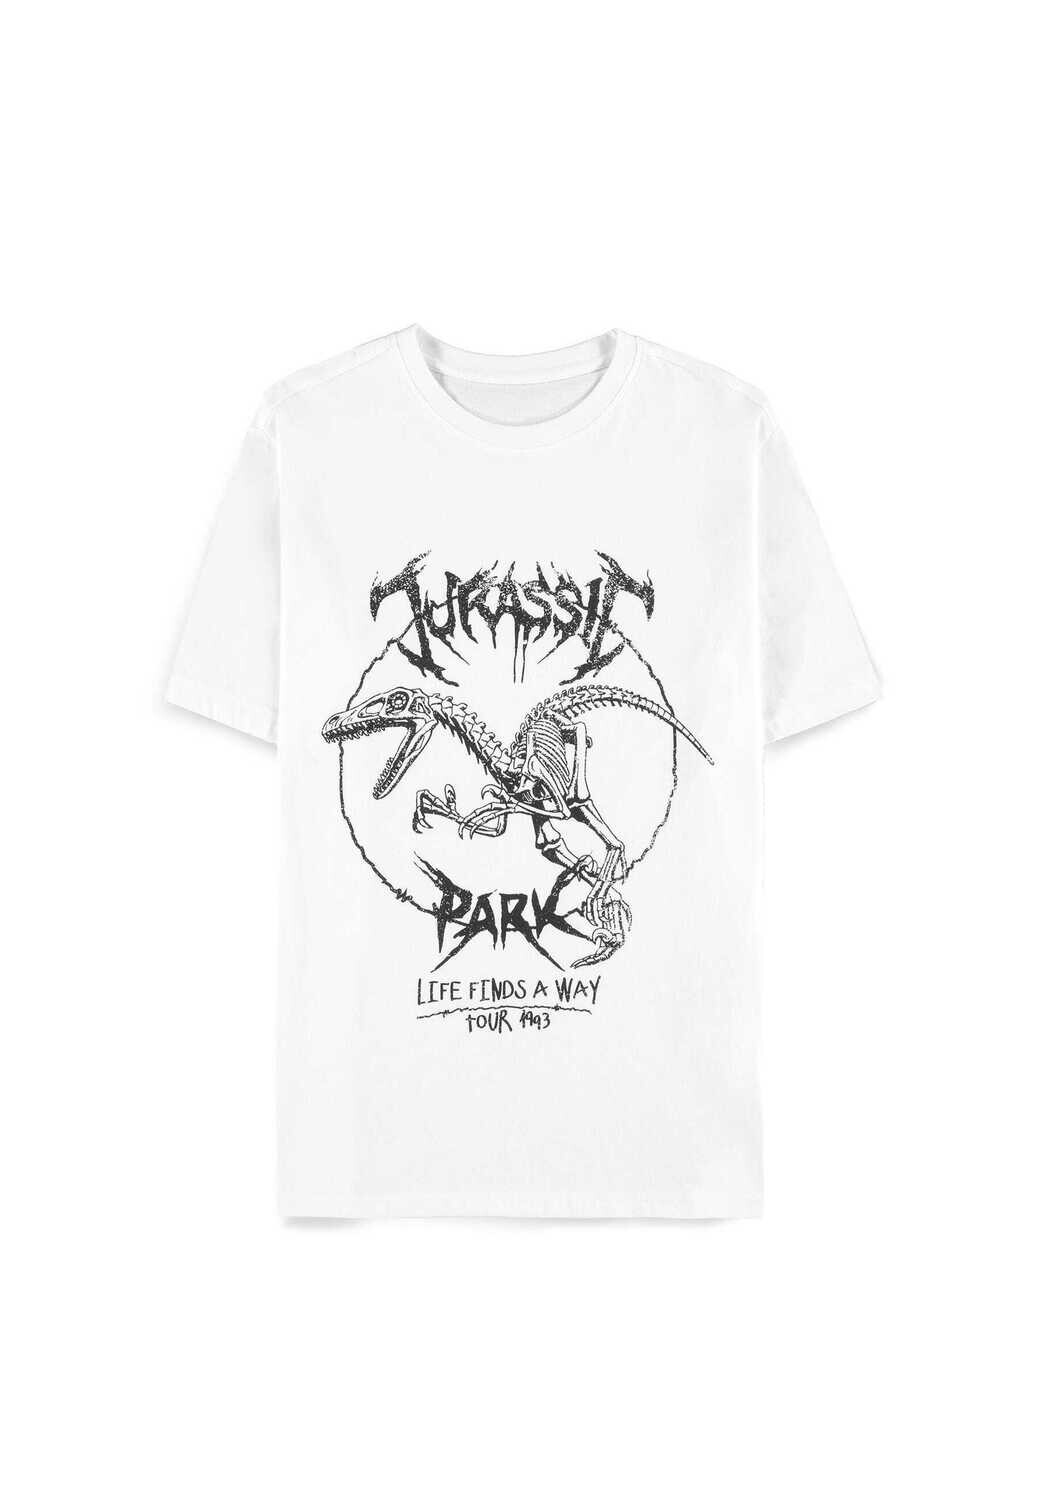 Universal - Jurassic Park - Men's Short Sleeved T-shirt